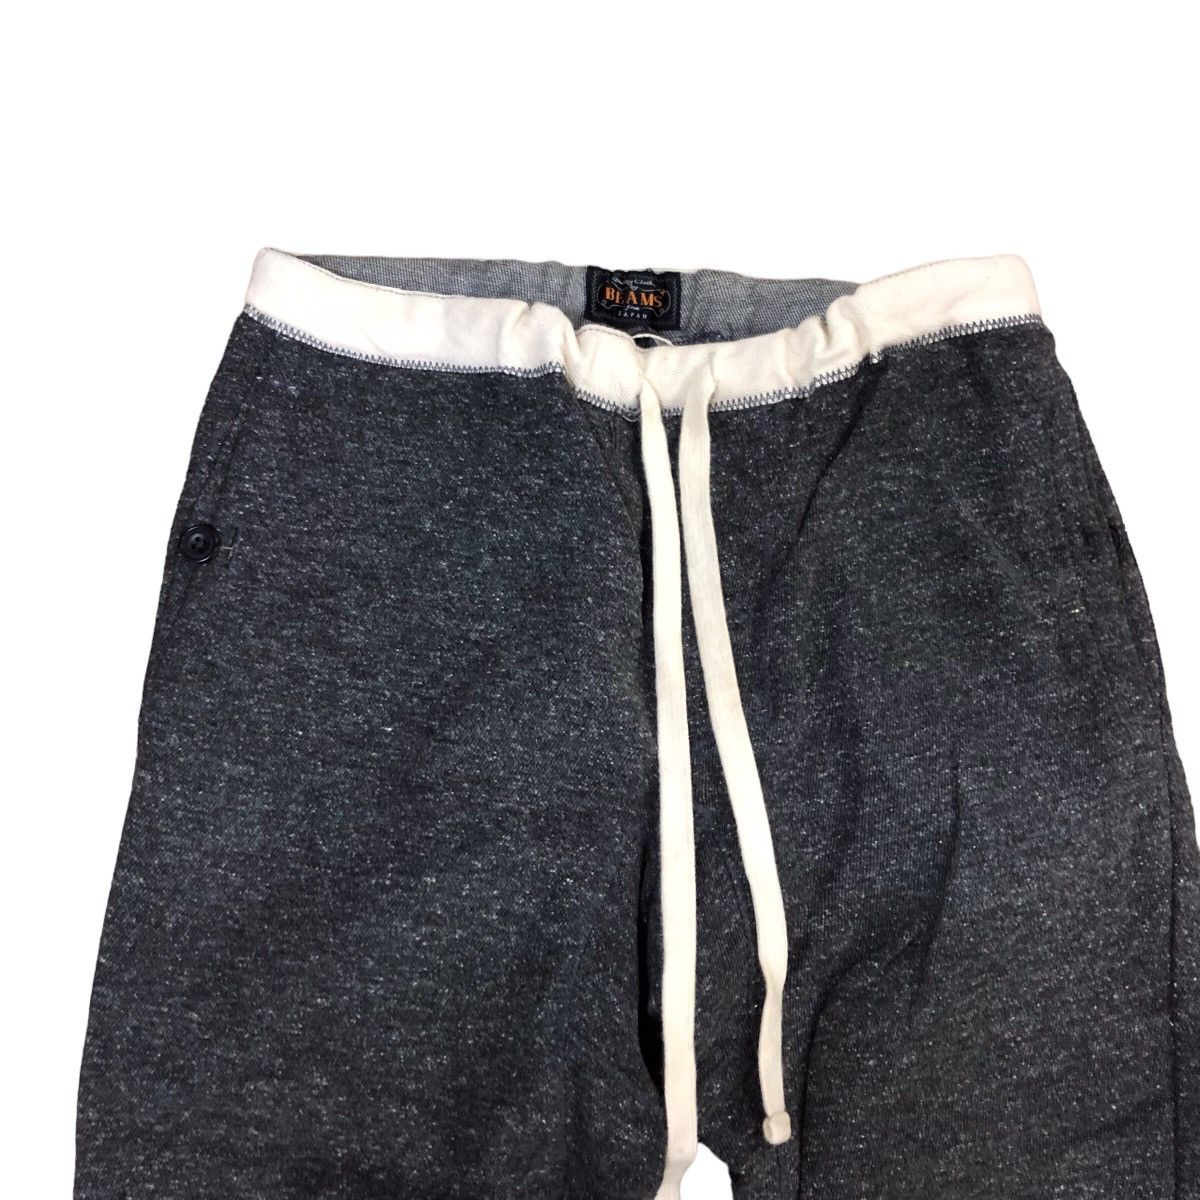 Beams japanese fabric jogger pants - 6